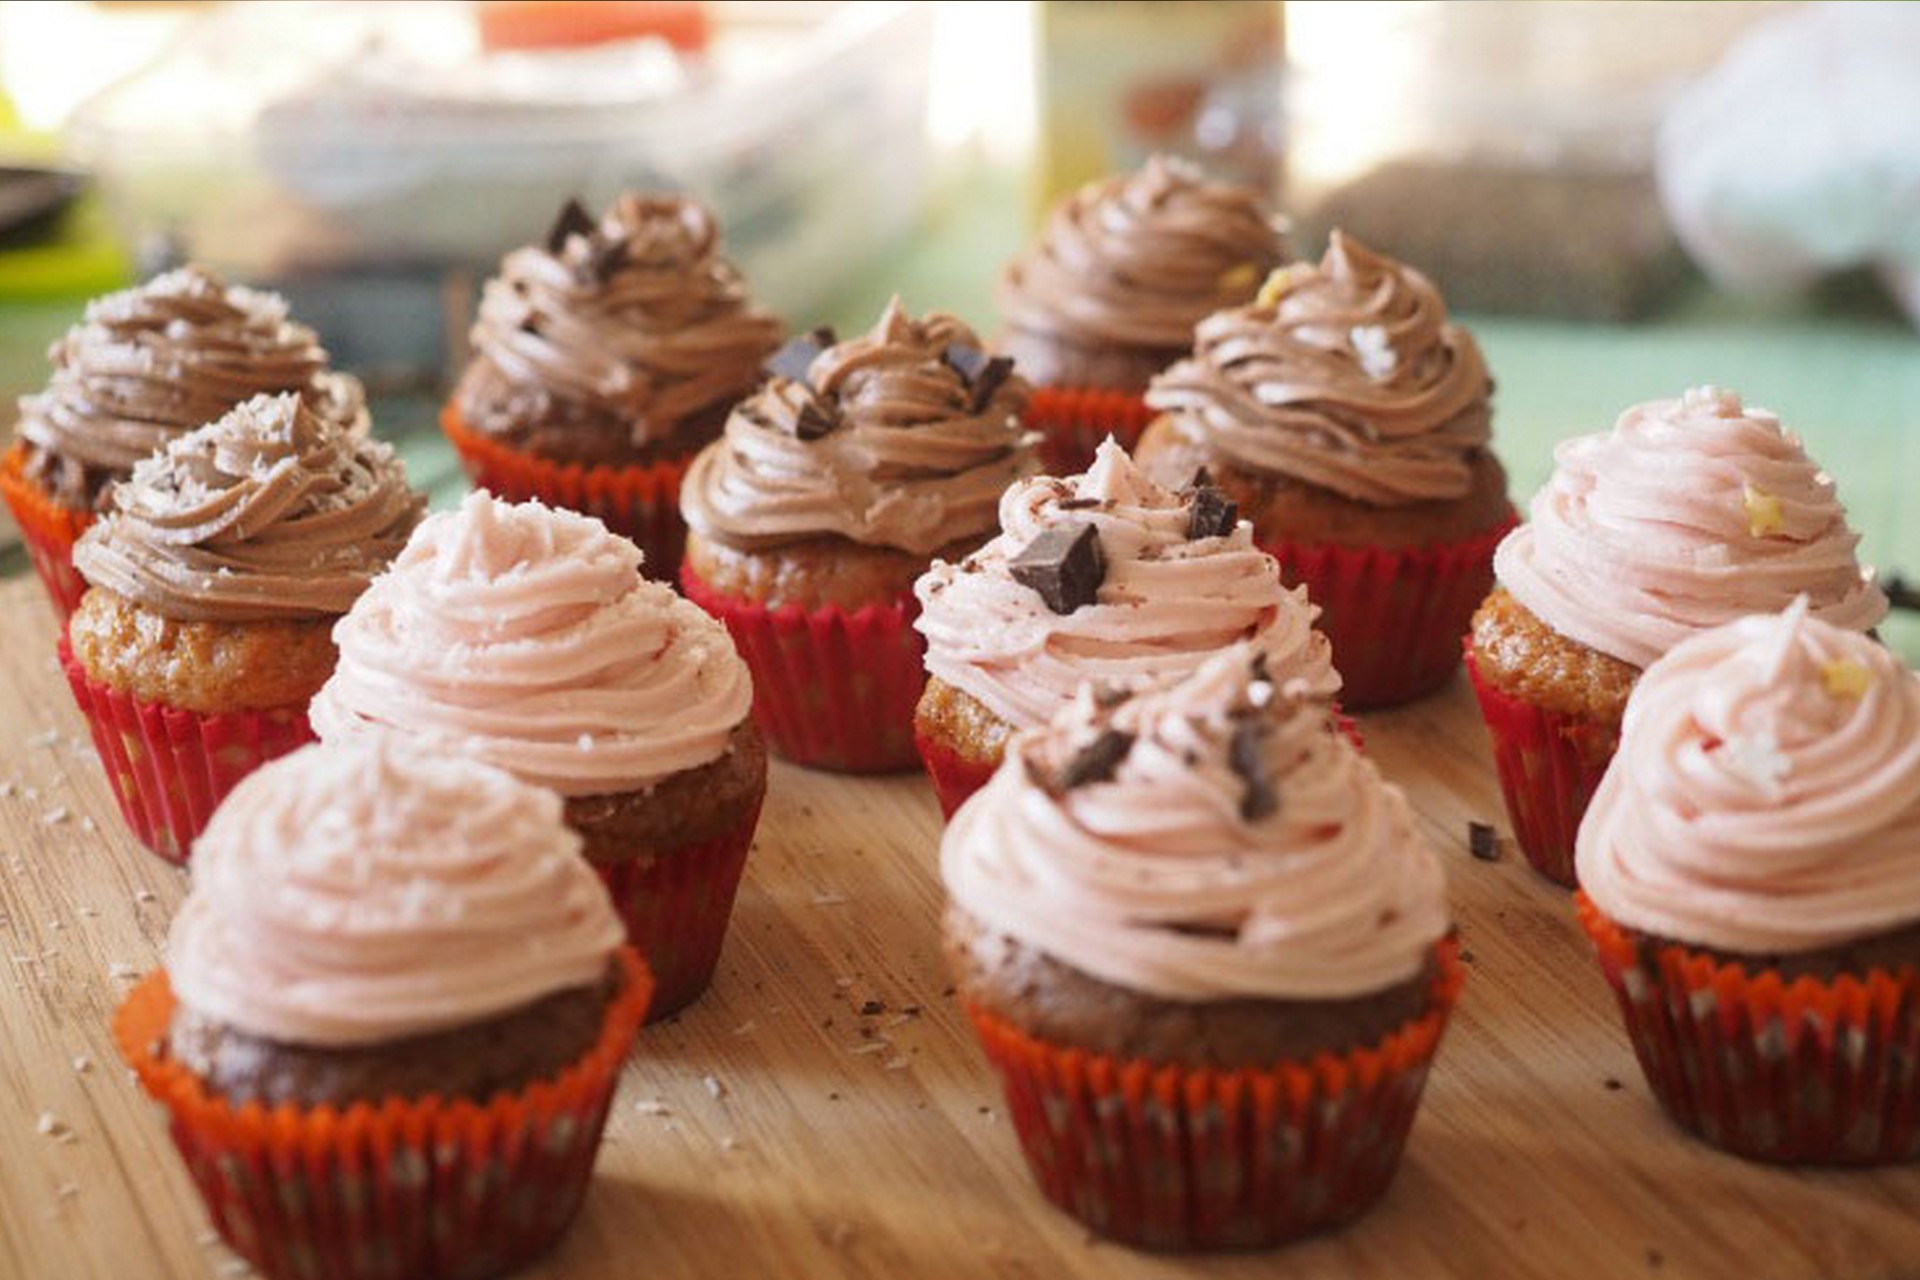 Cupcakes véganes : recette, déco et matériel - L'insouciance